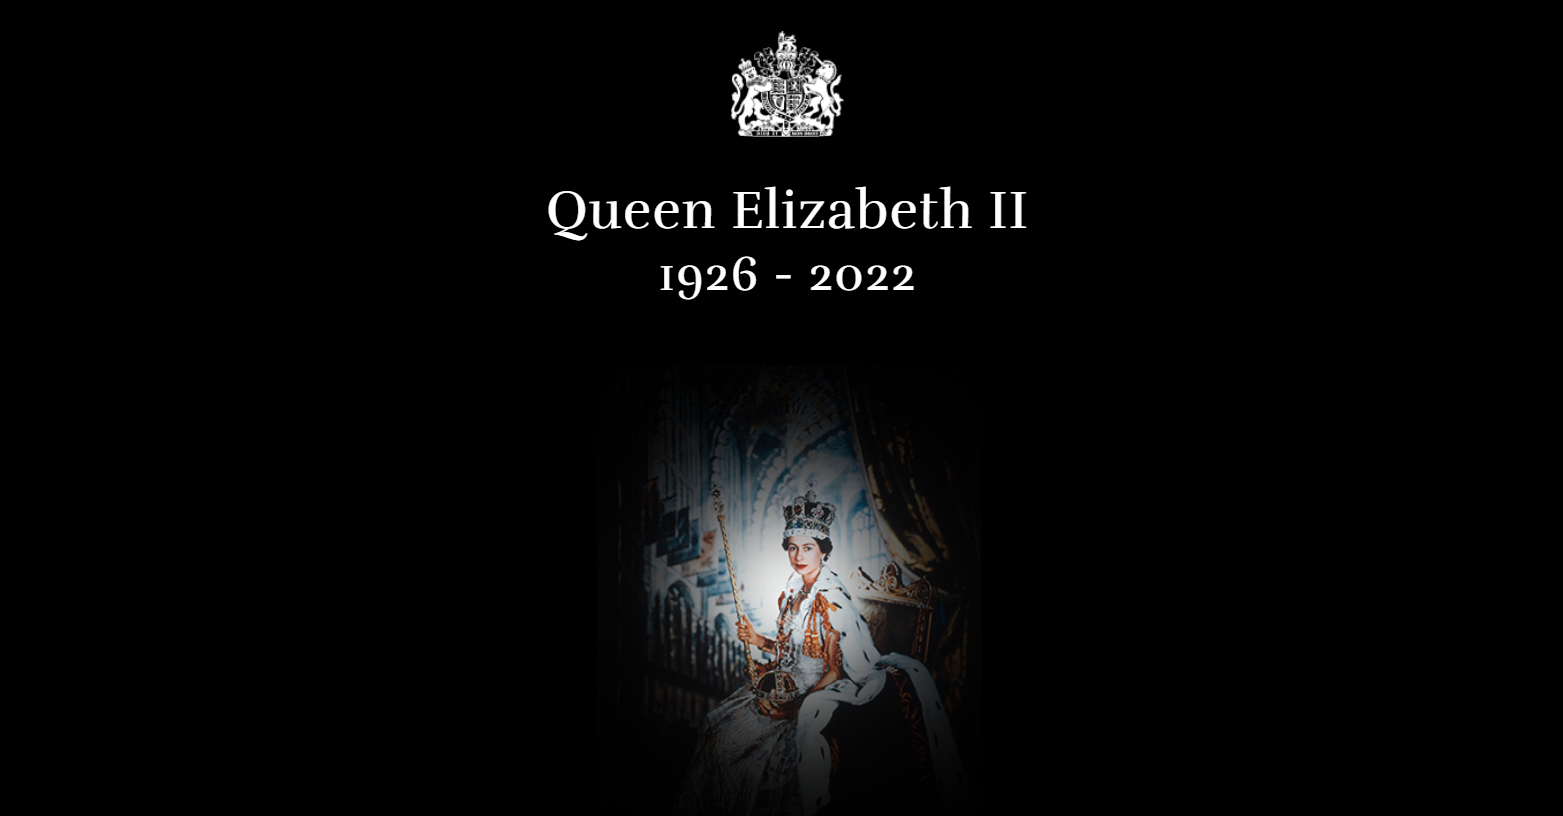 英国王室官网首页更新了女王去世的消息。